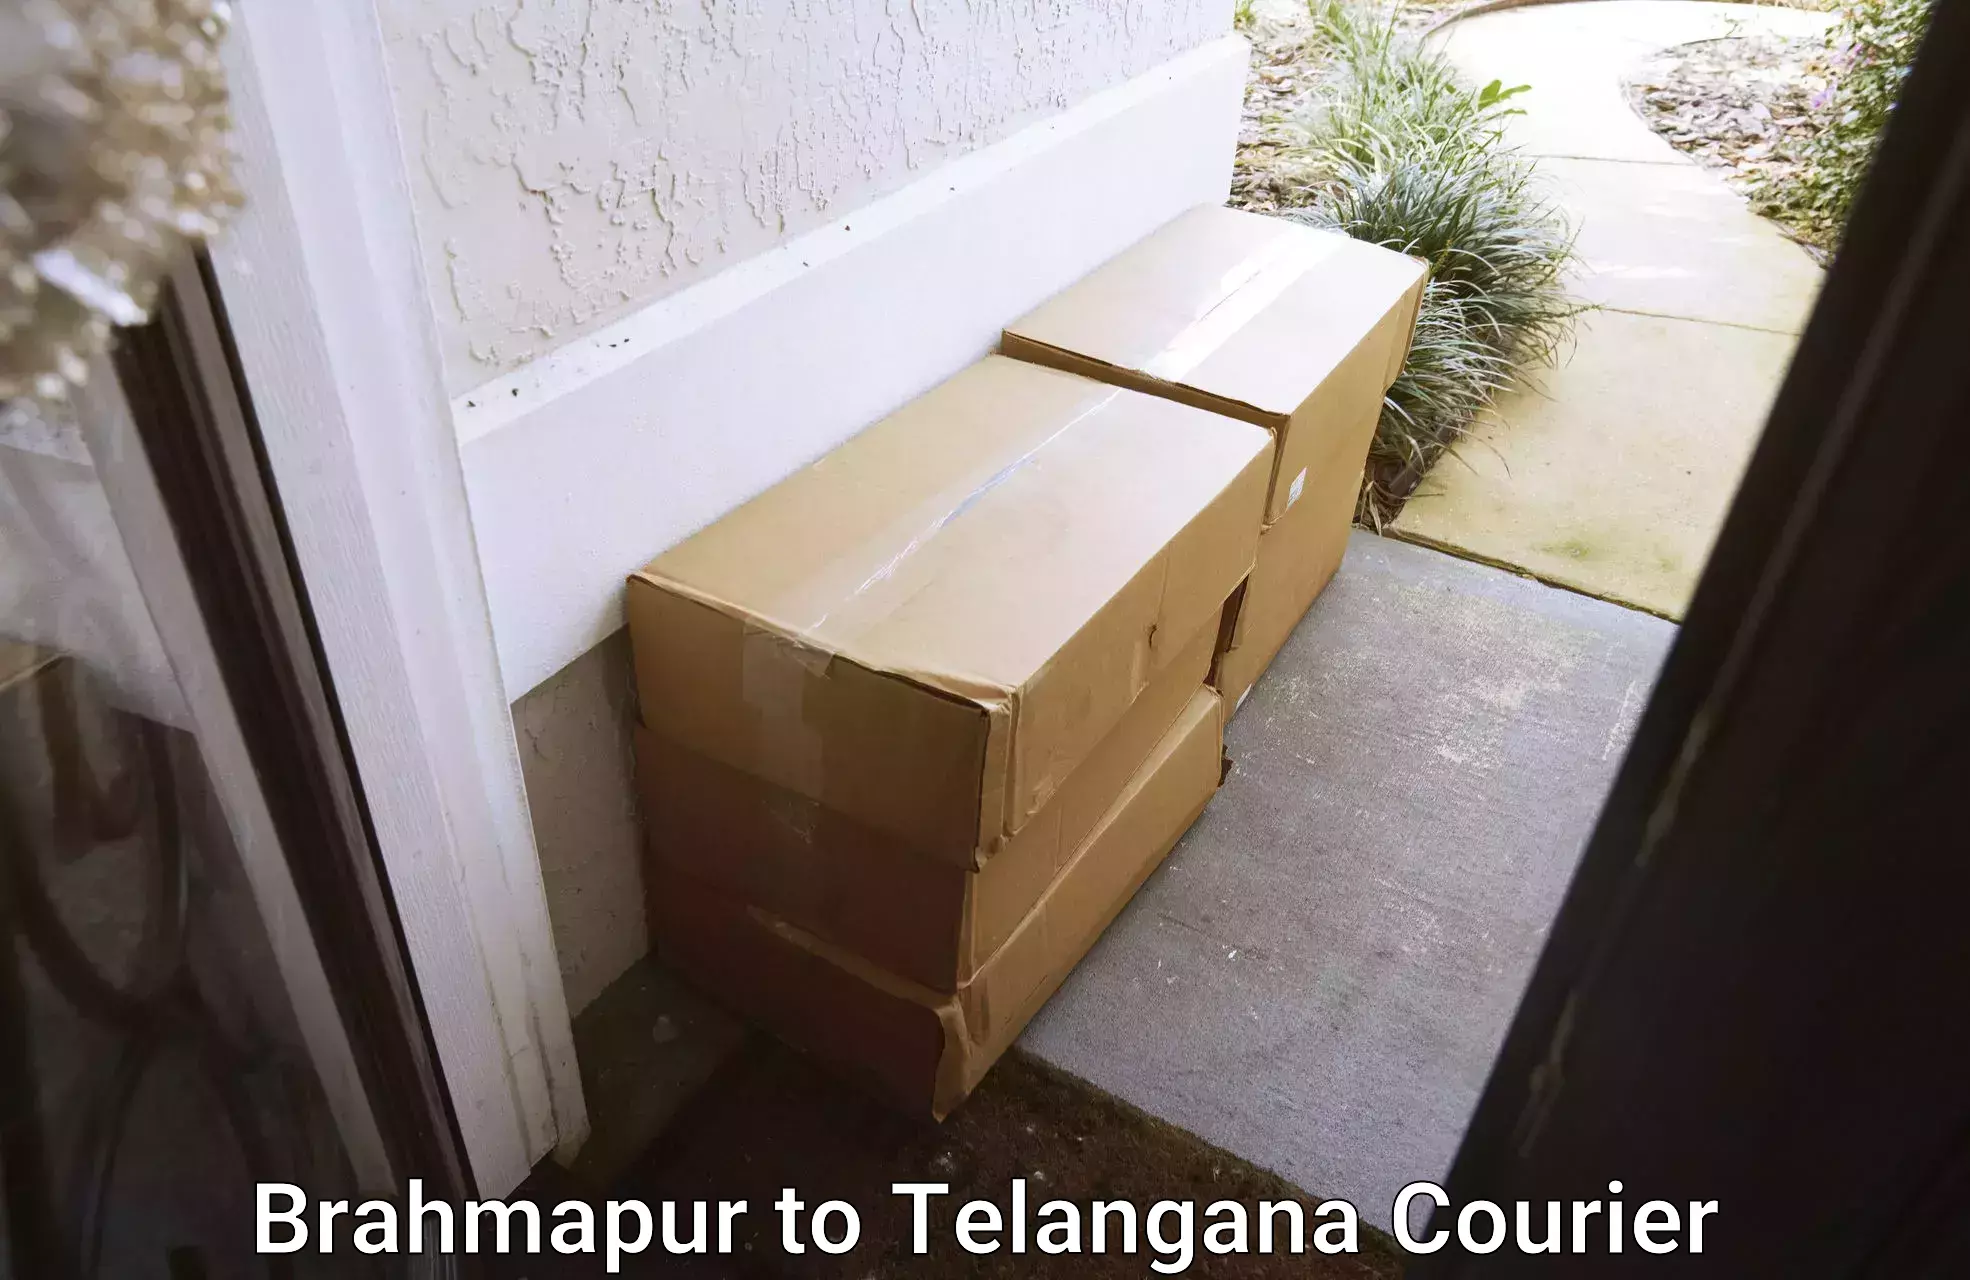 Home goods moving company Brahmapur to Nalgonda